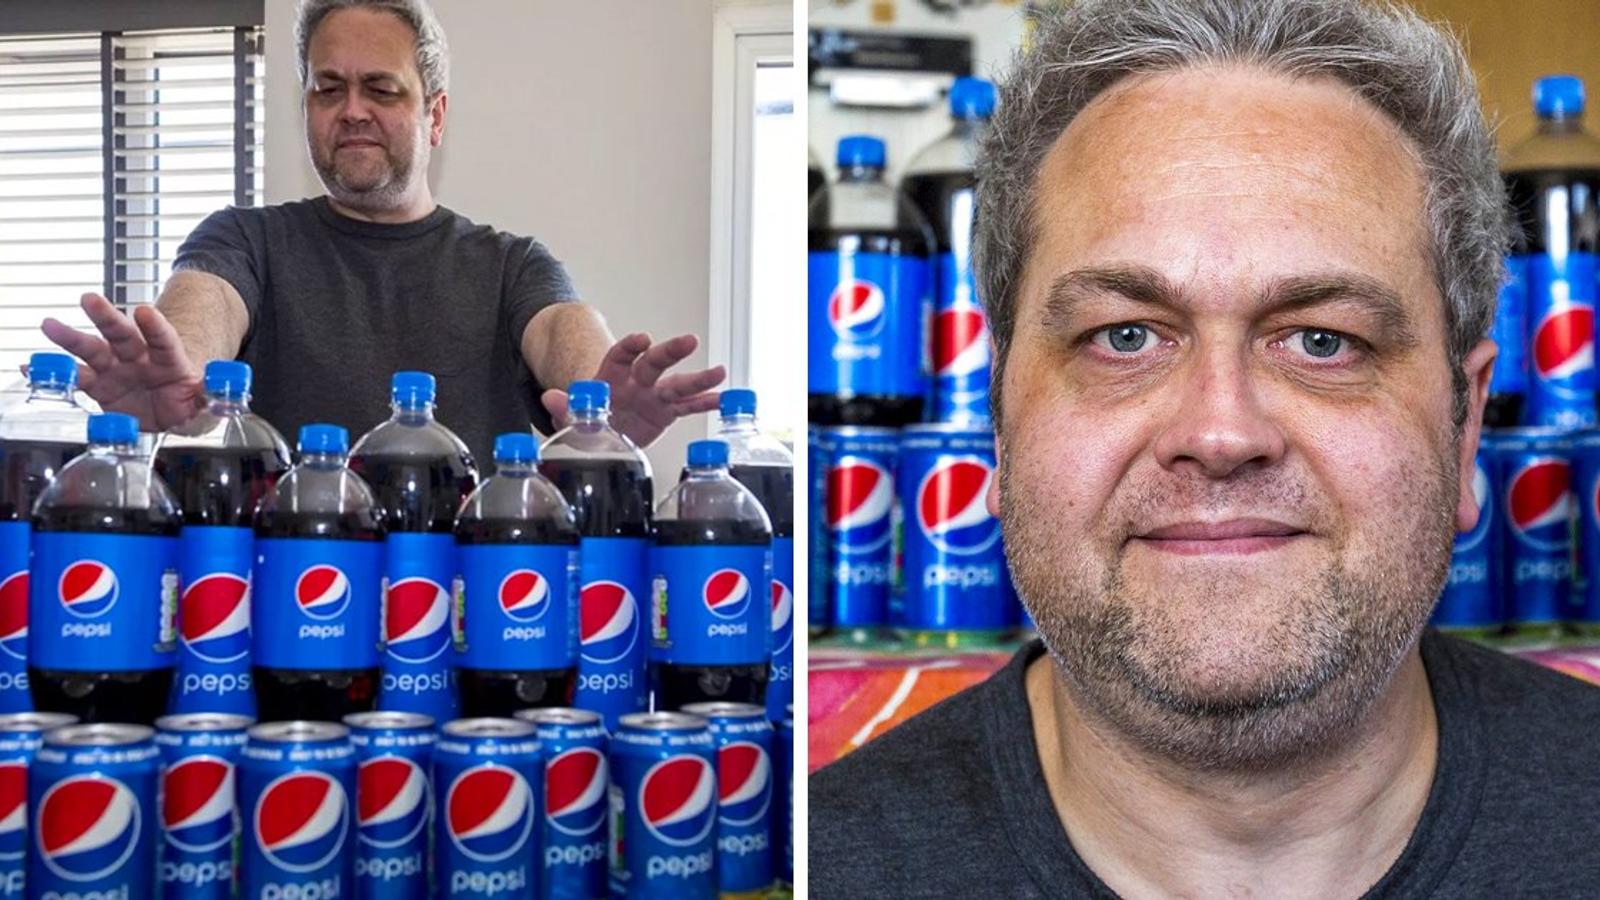 Un homme a guéri sa dépendance au Pepsi grâce à l’hypnose